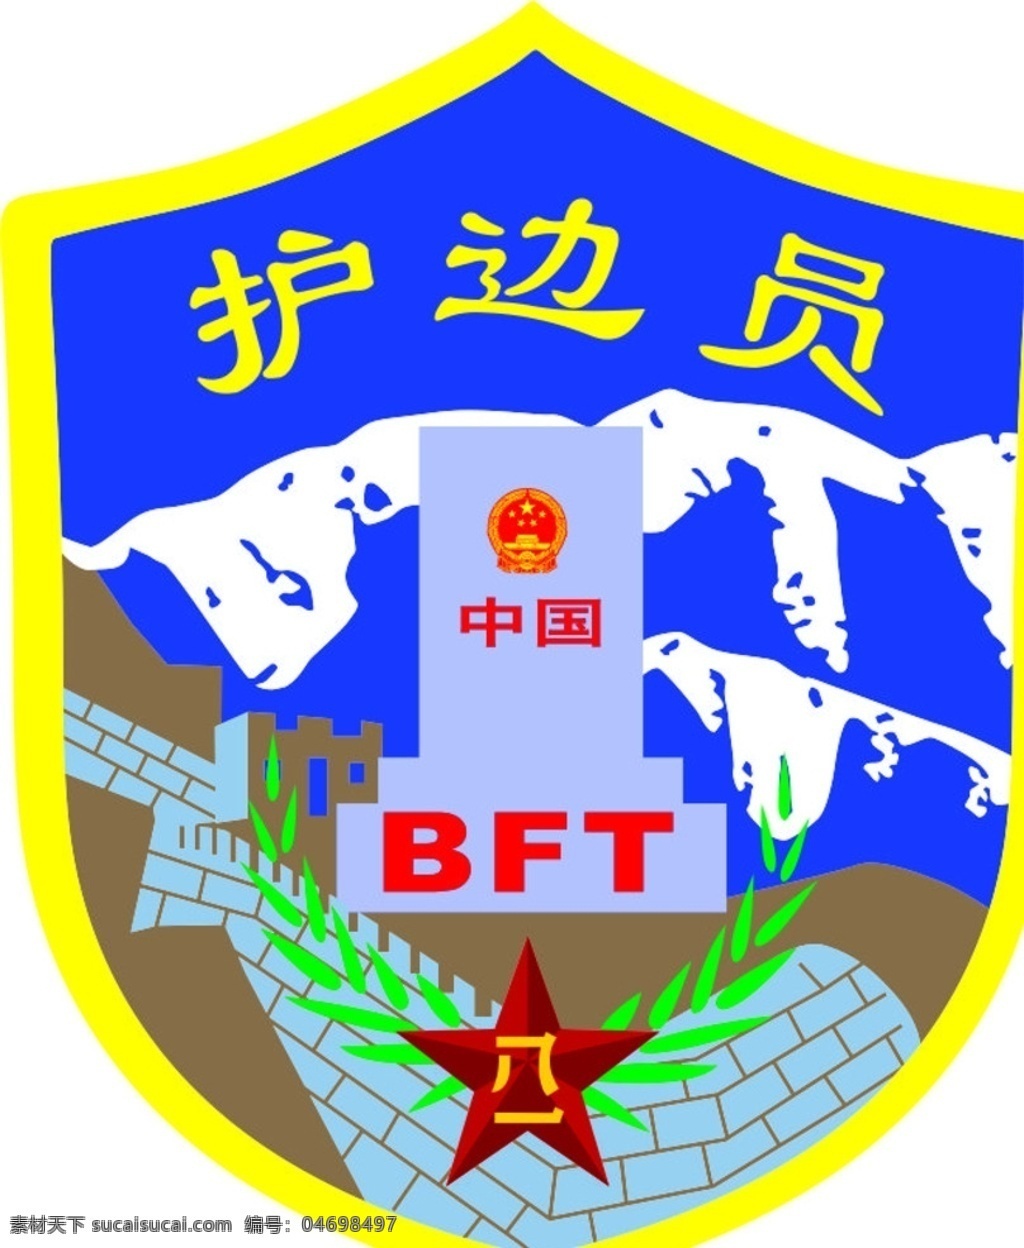 中国 护 员 bft 徽章 中国护边员 徽标 八一 中国国徽 护边员 矢量图 标志图标 公共标识标志